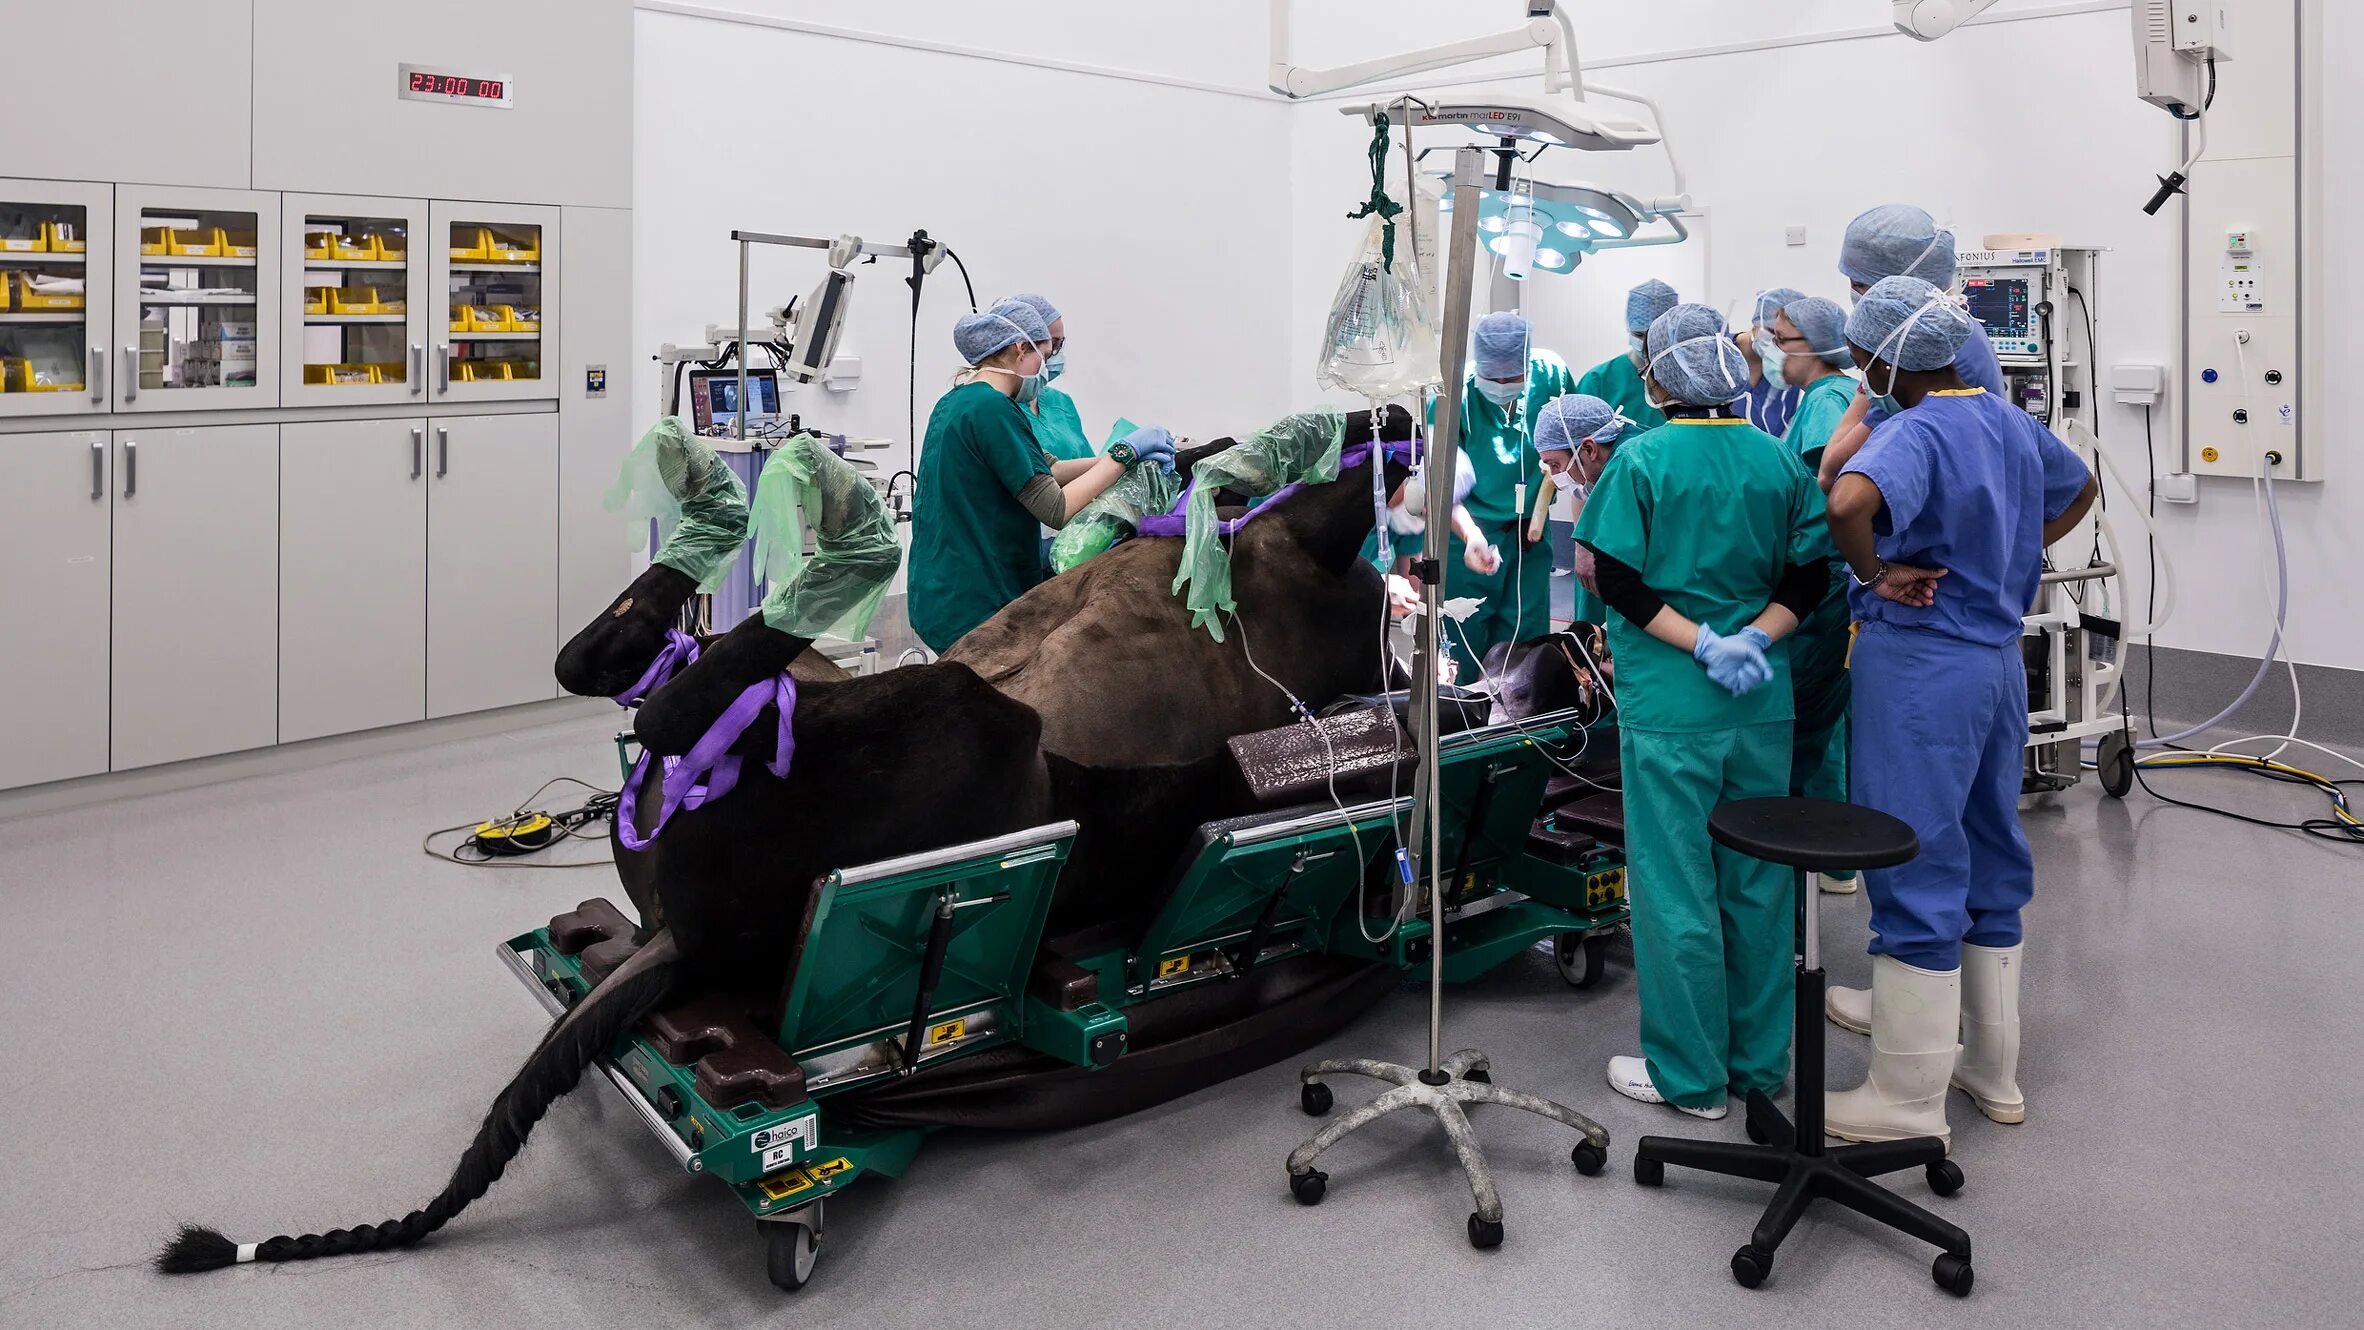 Ветеринарная клиника для лошадей. Операционная клиники для лошадей. Лошадь на операционном столе. Операции ветеринаров